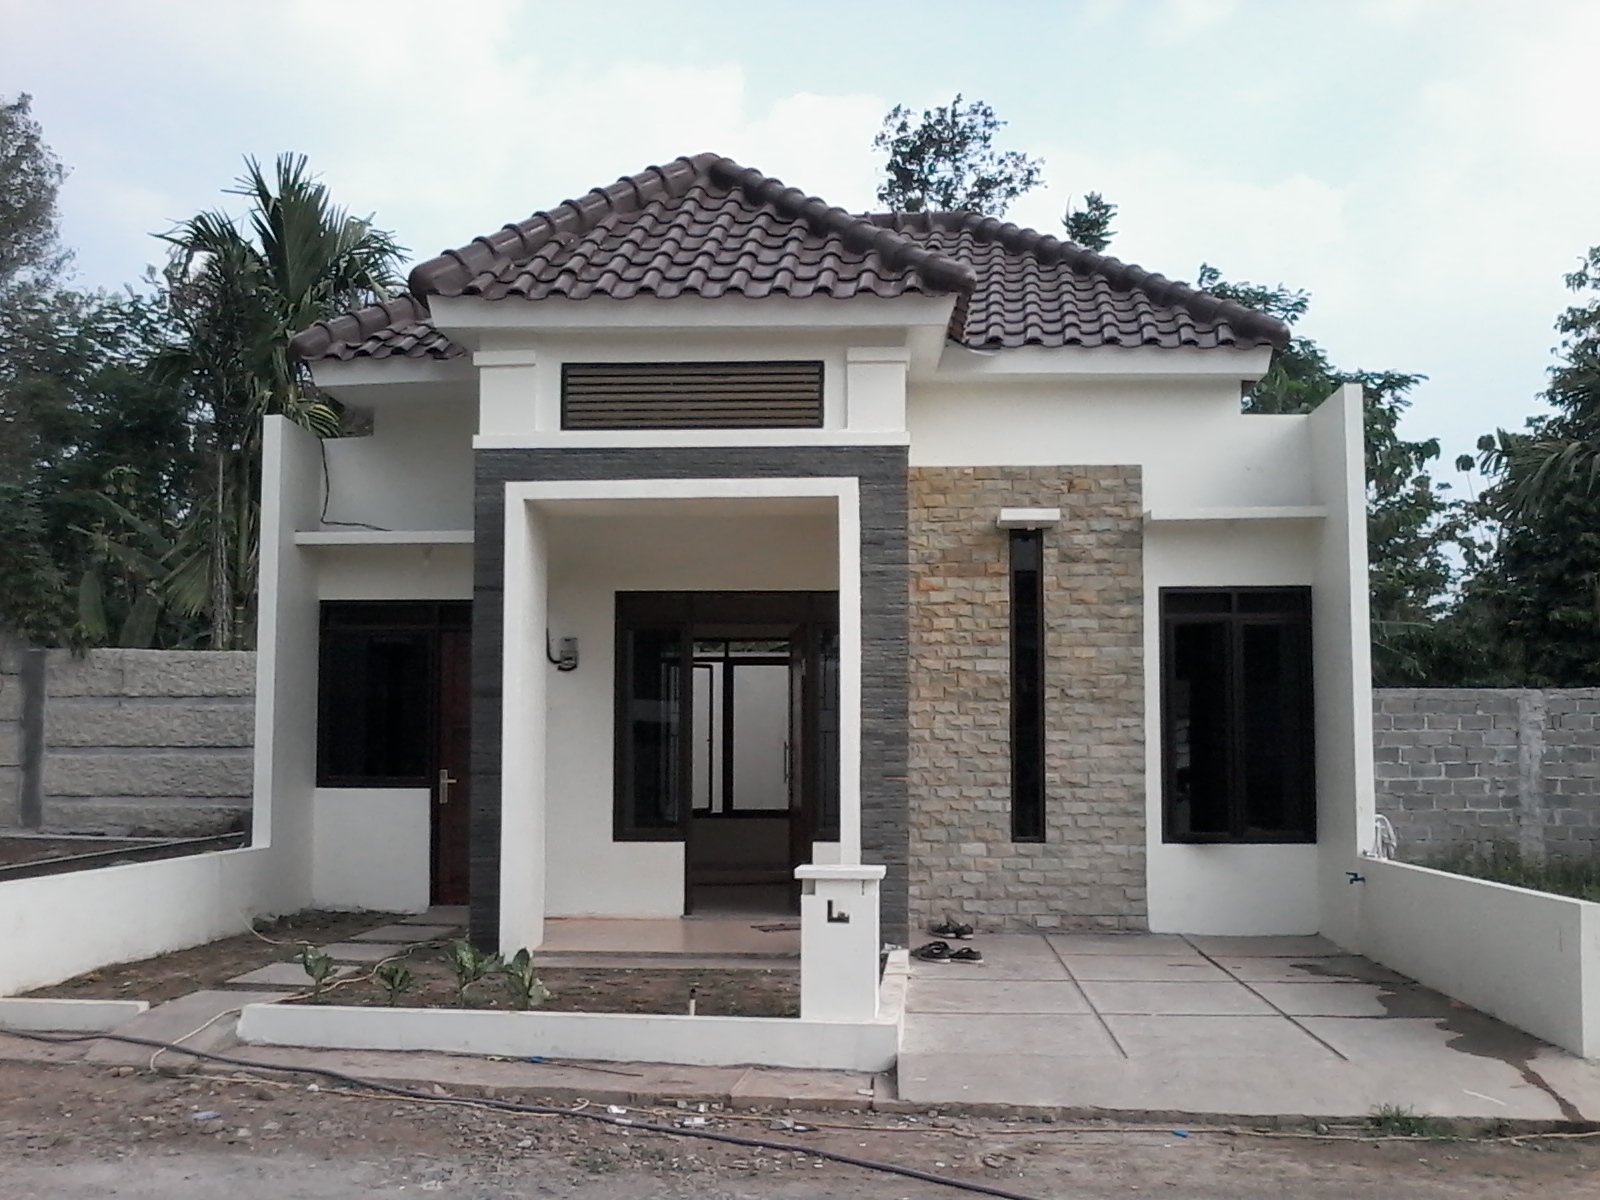  Rumah  Dijual Cluster di Bogor dekat Stasiun kota Jual Beli Rumah  Bogor Kota